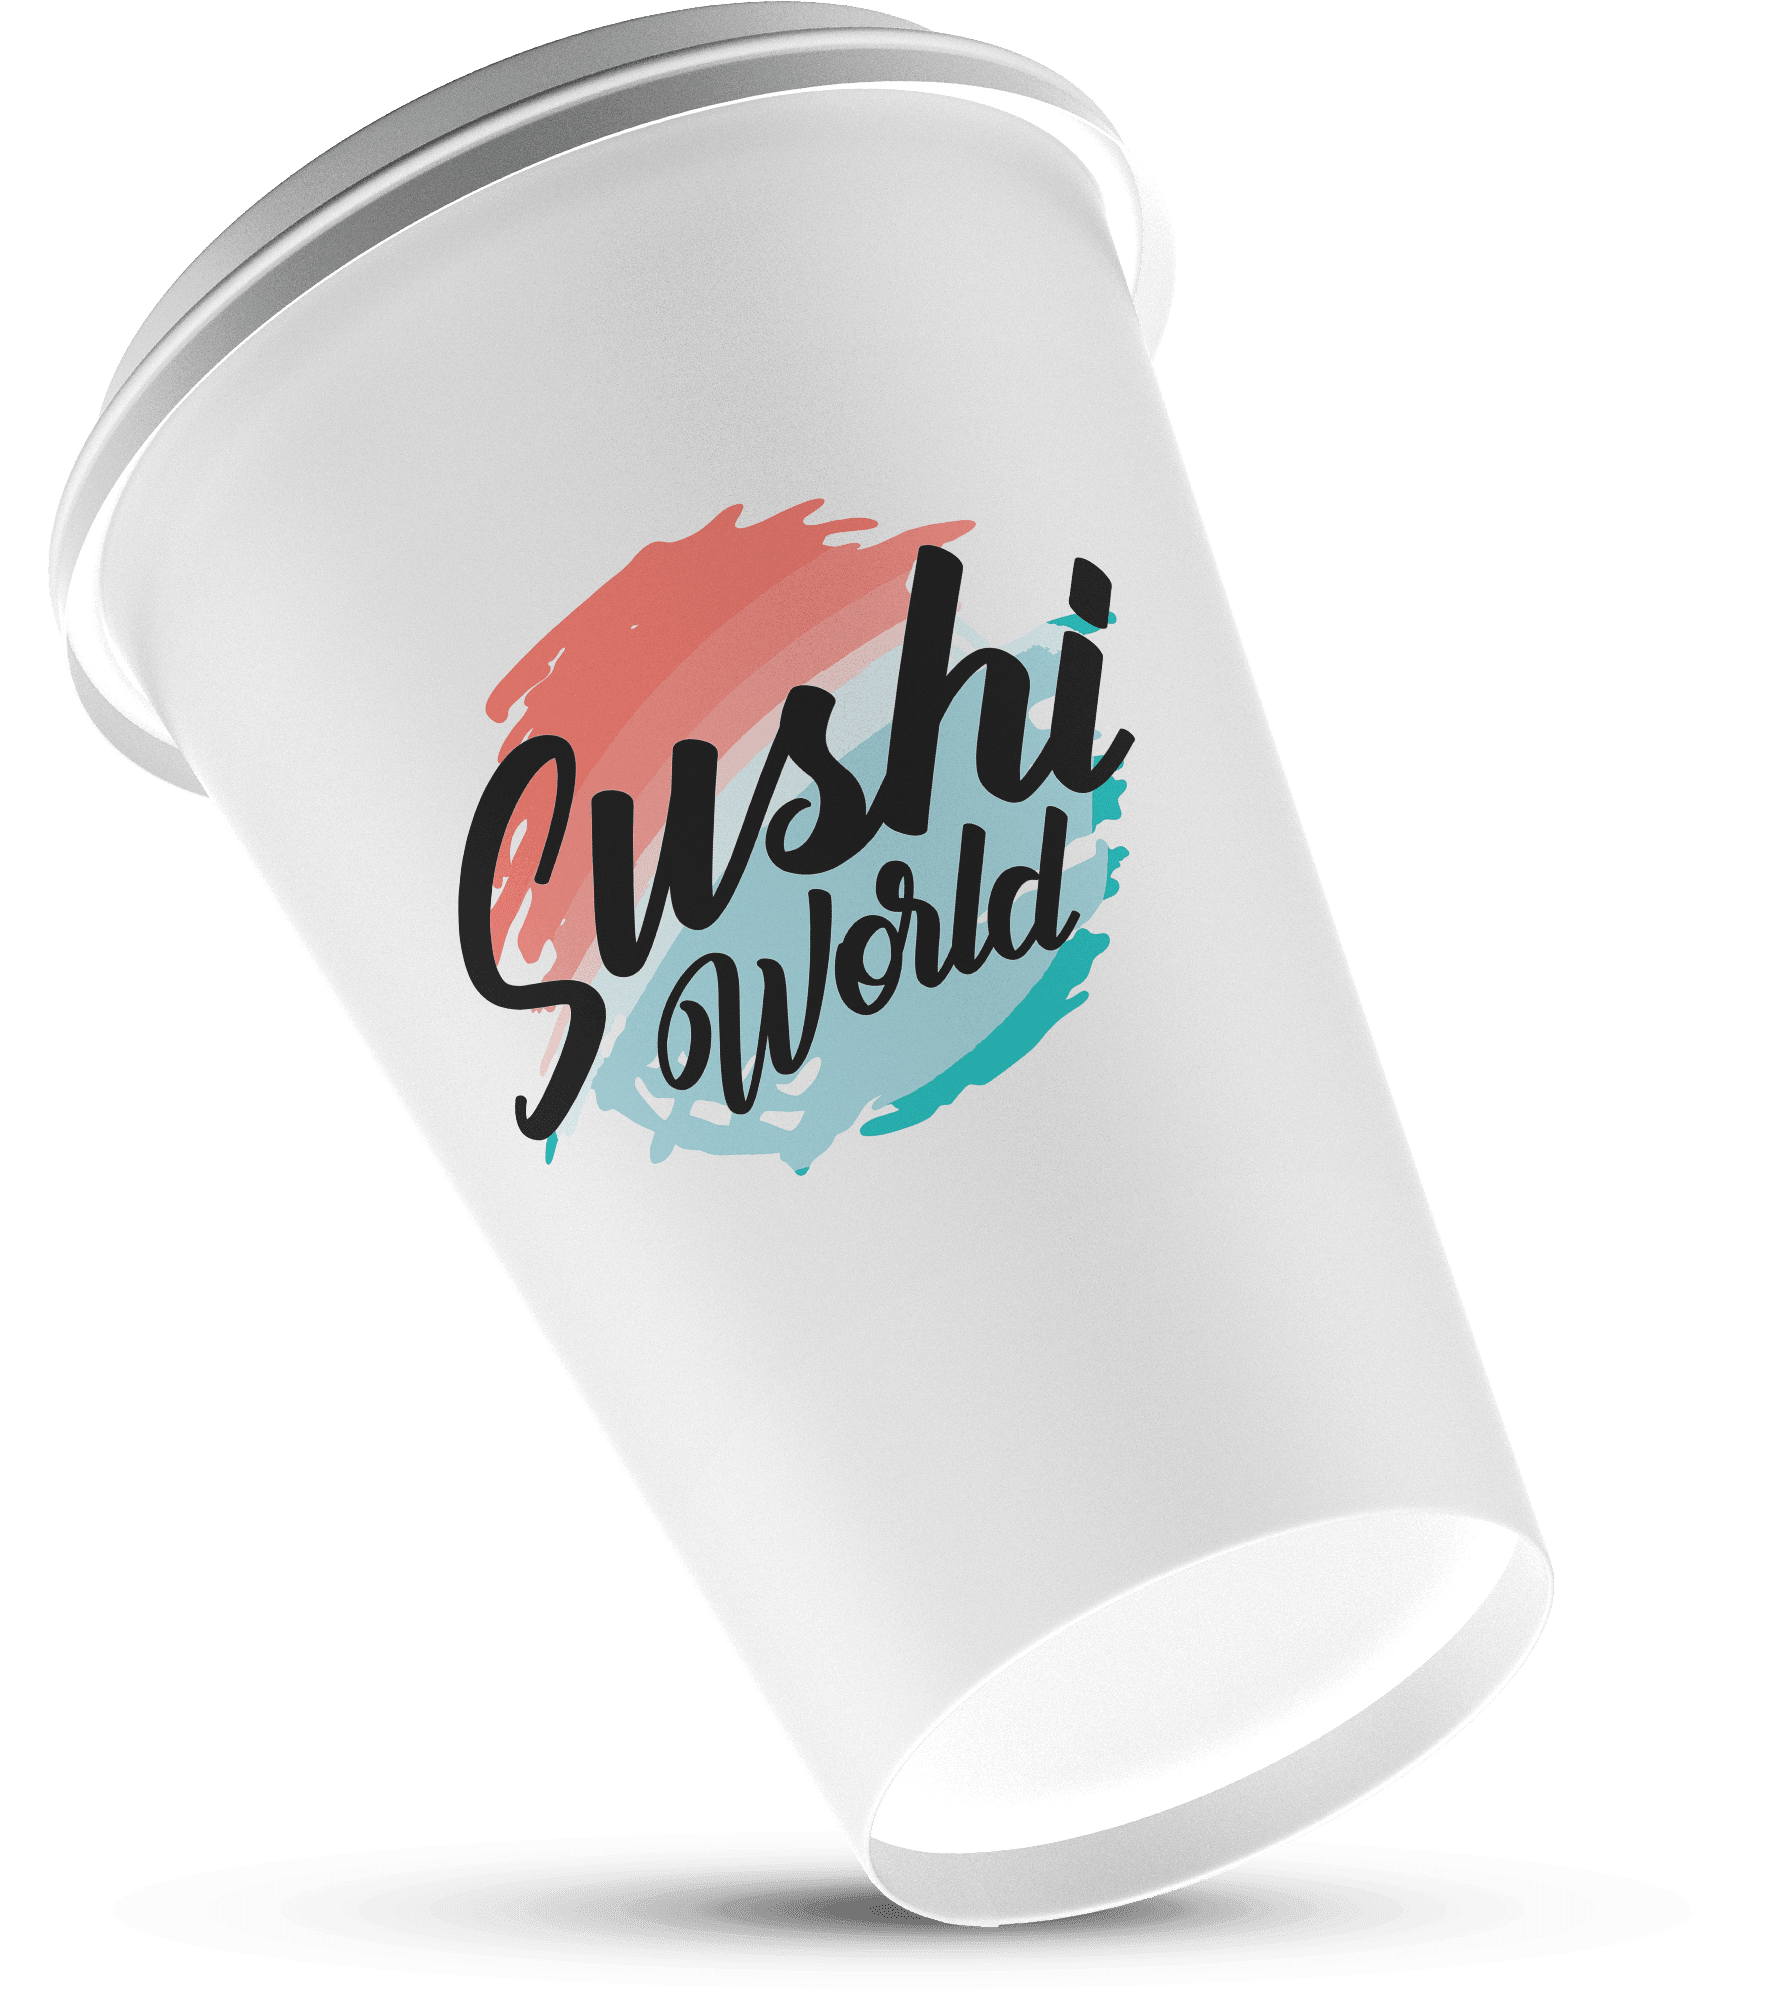 Rebranding Sushi World identyfikacja wizualna 10 min